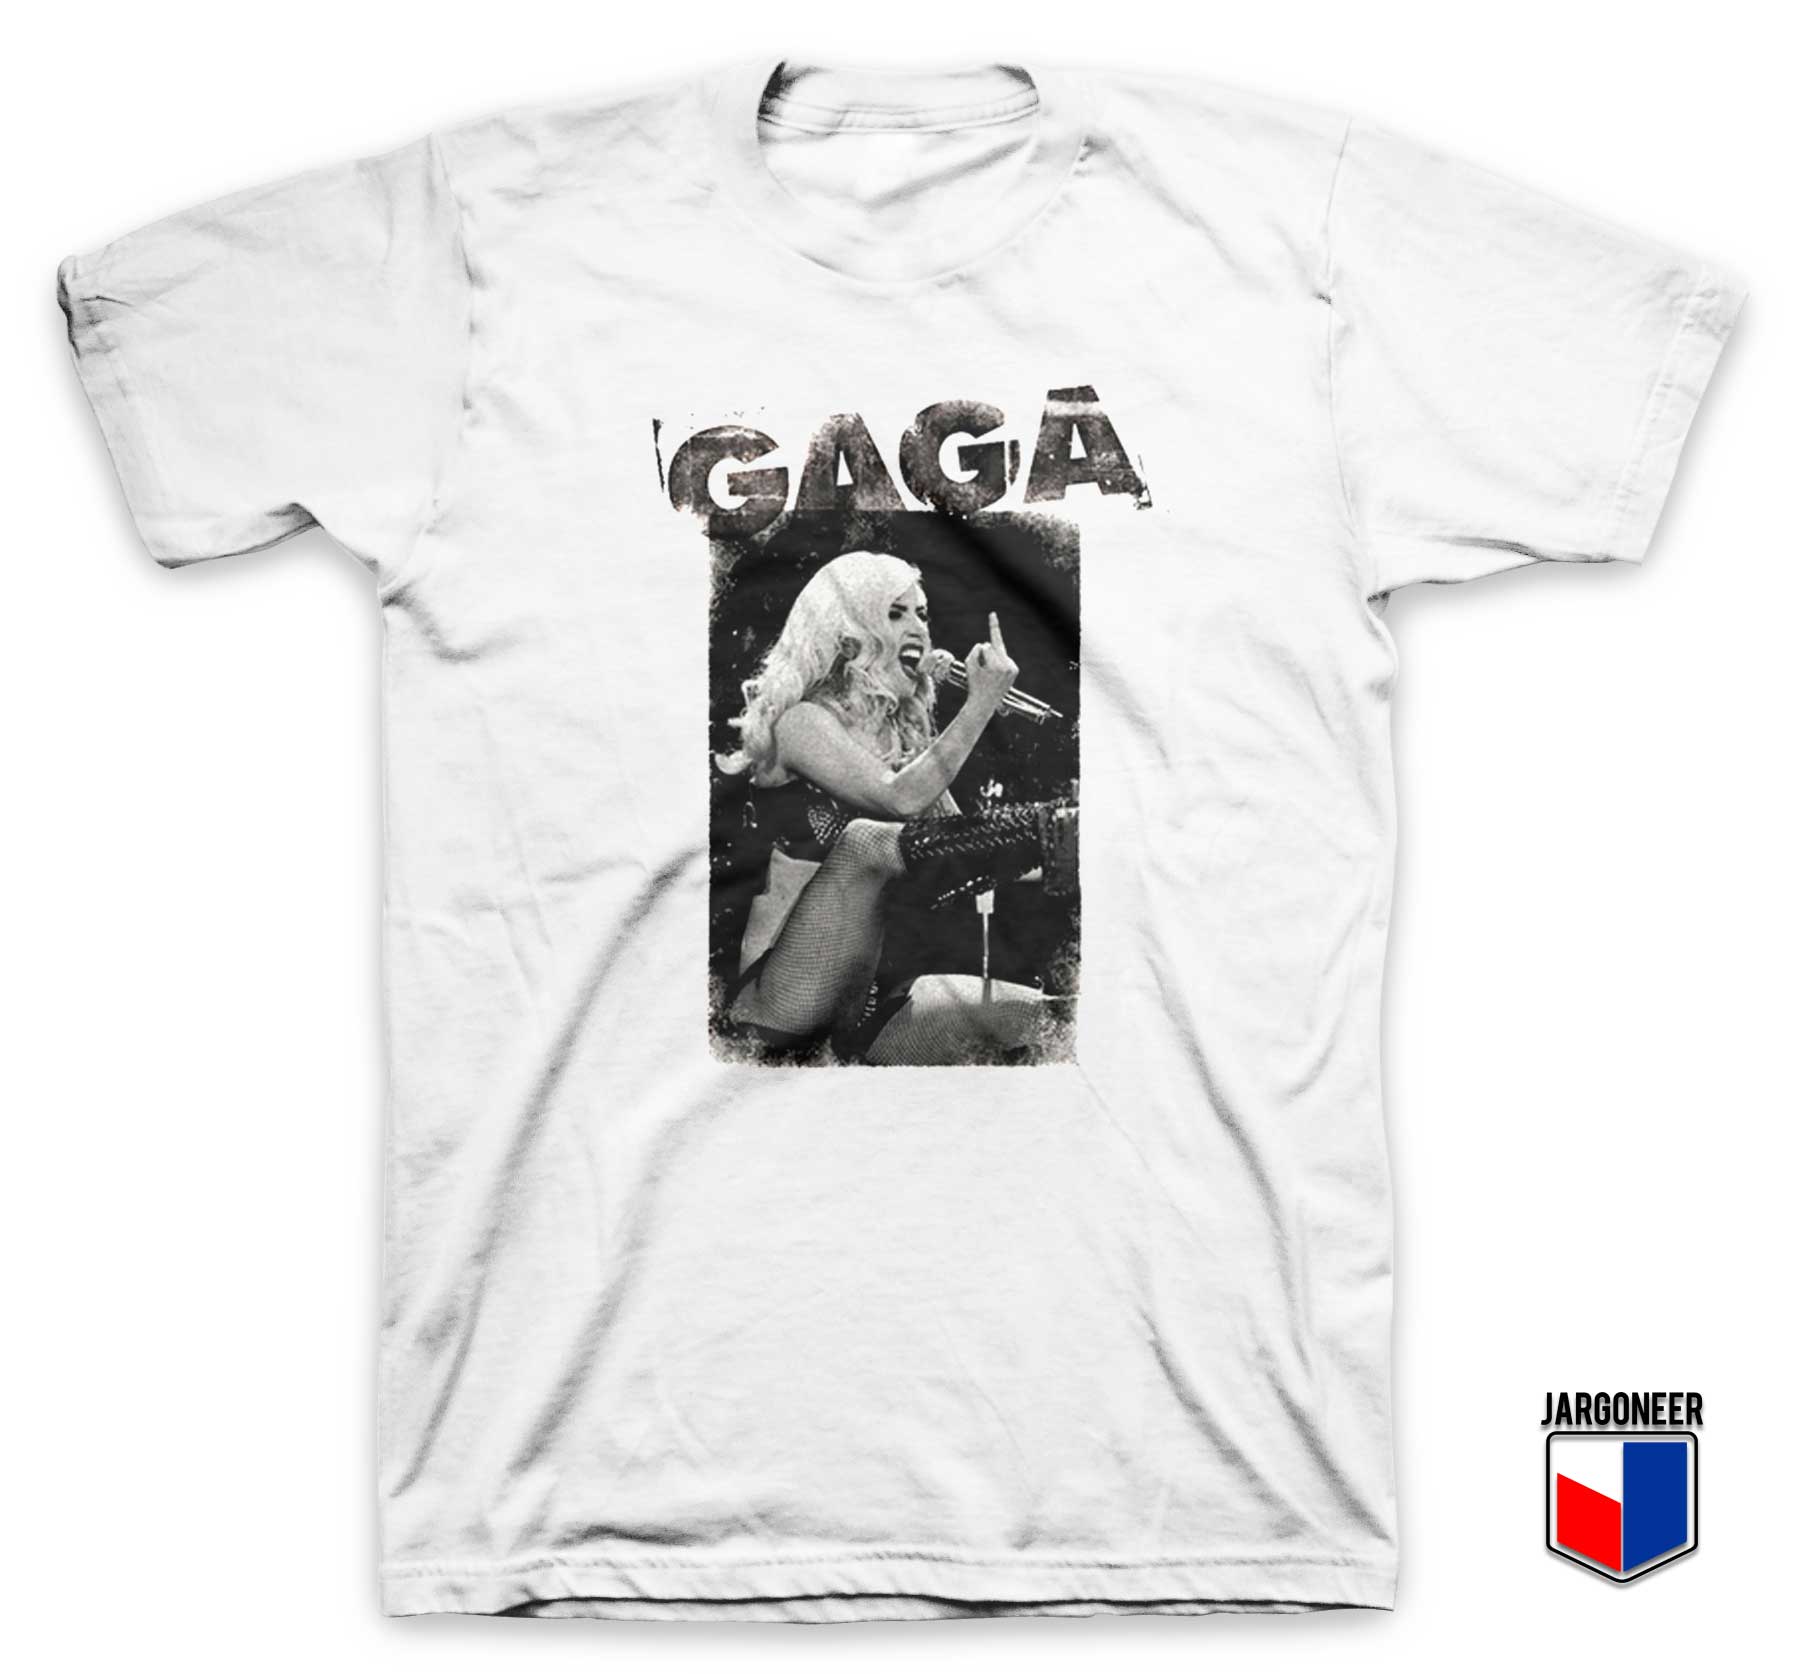 Gaga Middle Finger - Shop Unique Graphic Cool Shirt Designs